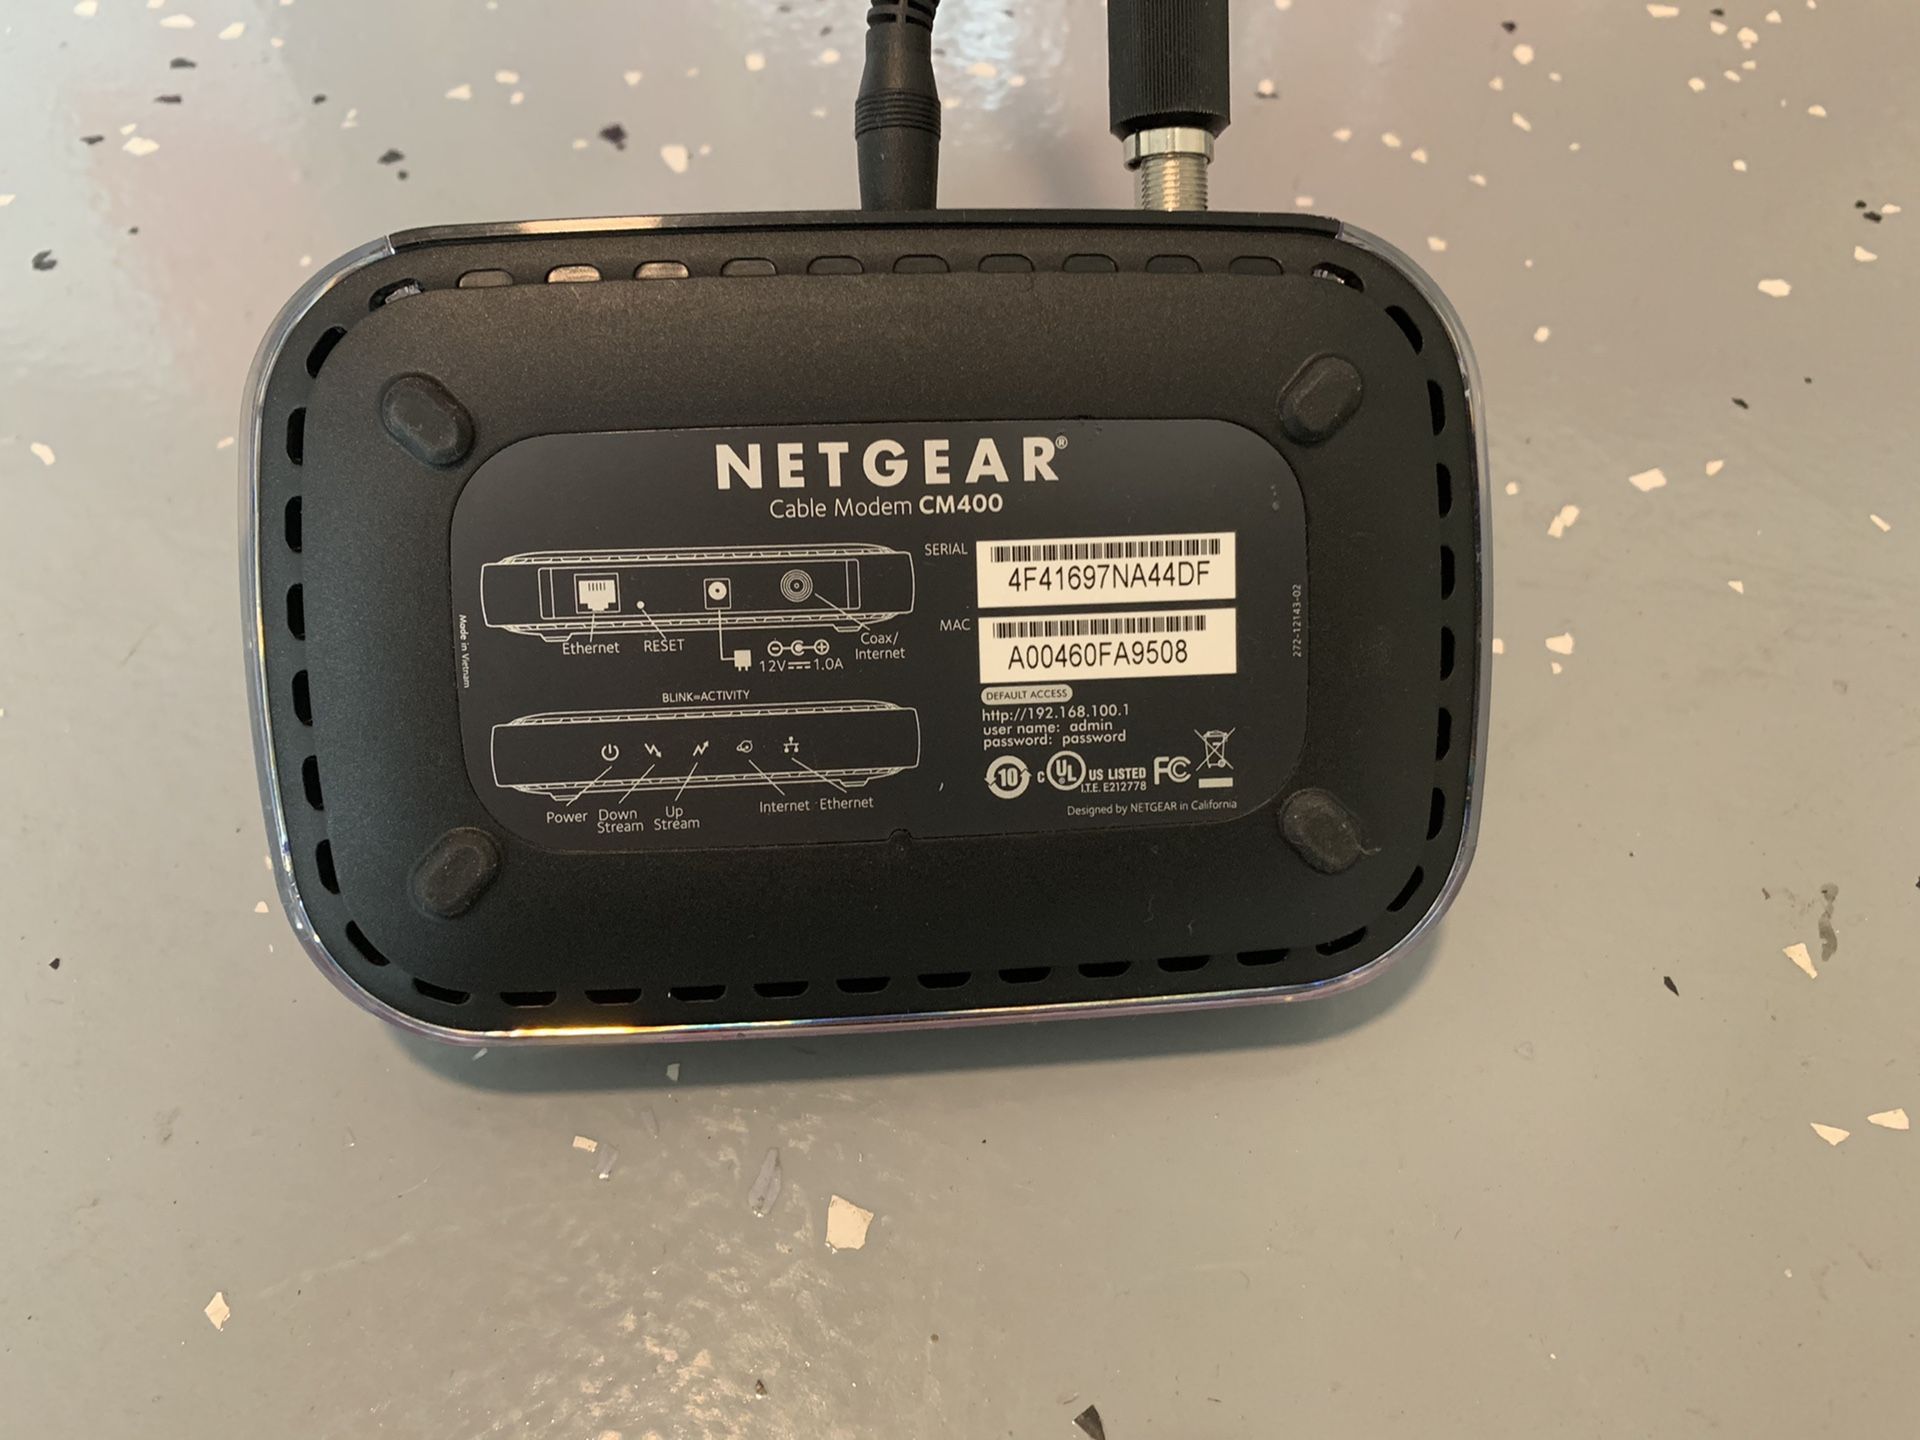 Netgear cable modem cm400